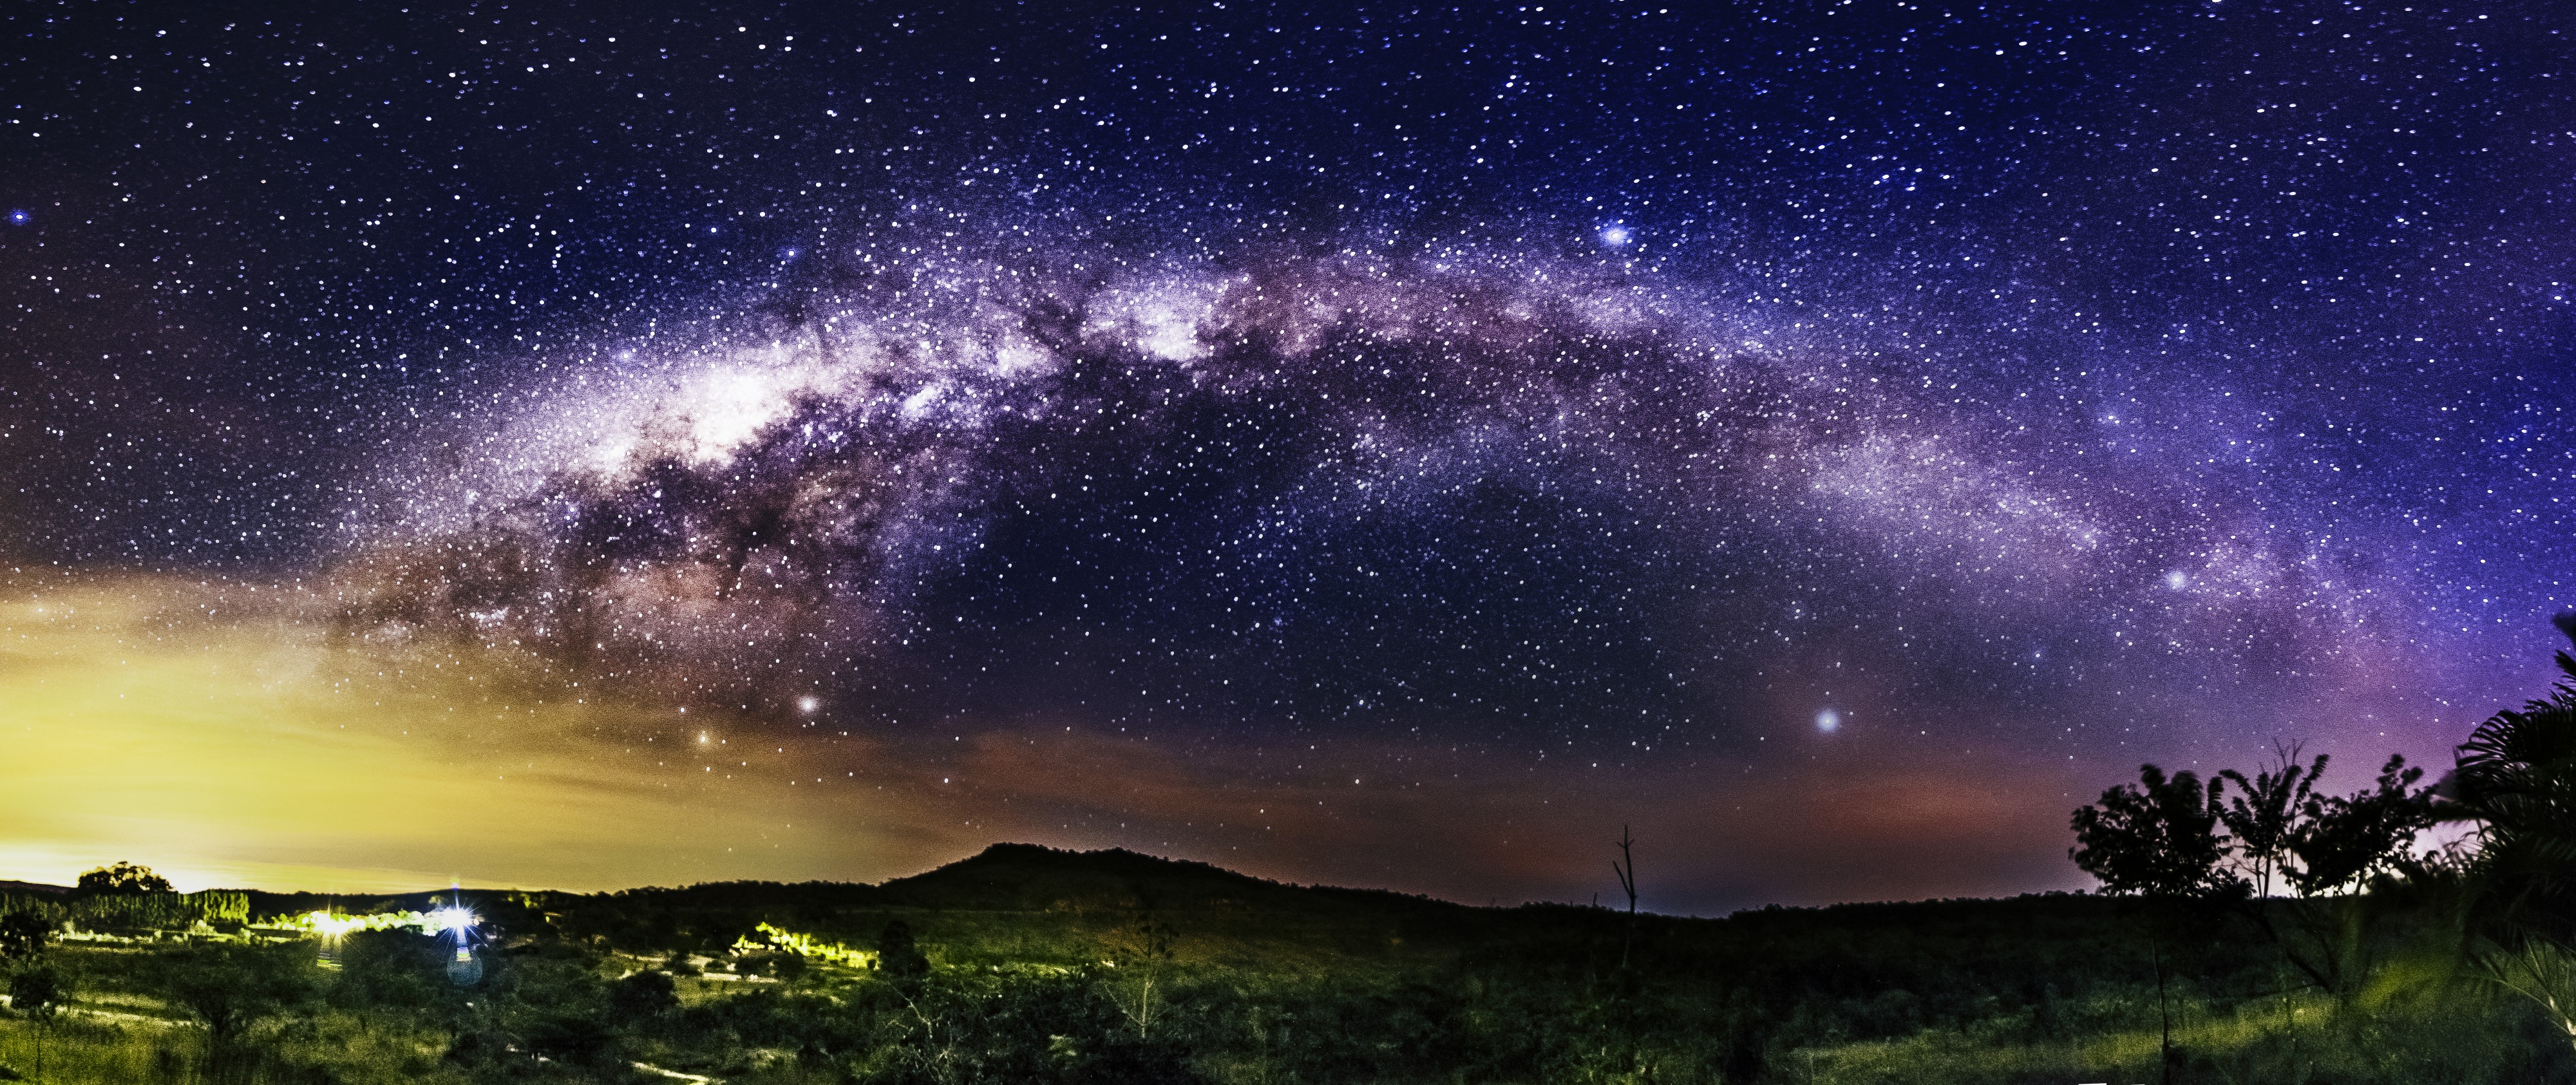 Arco da Via Láctea sobre Corumbá / The Milky Way